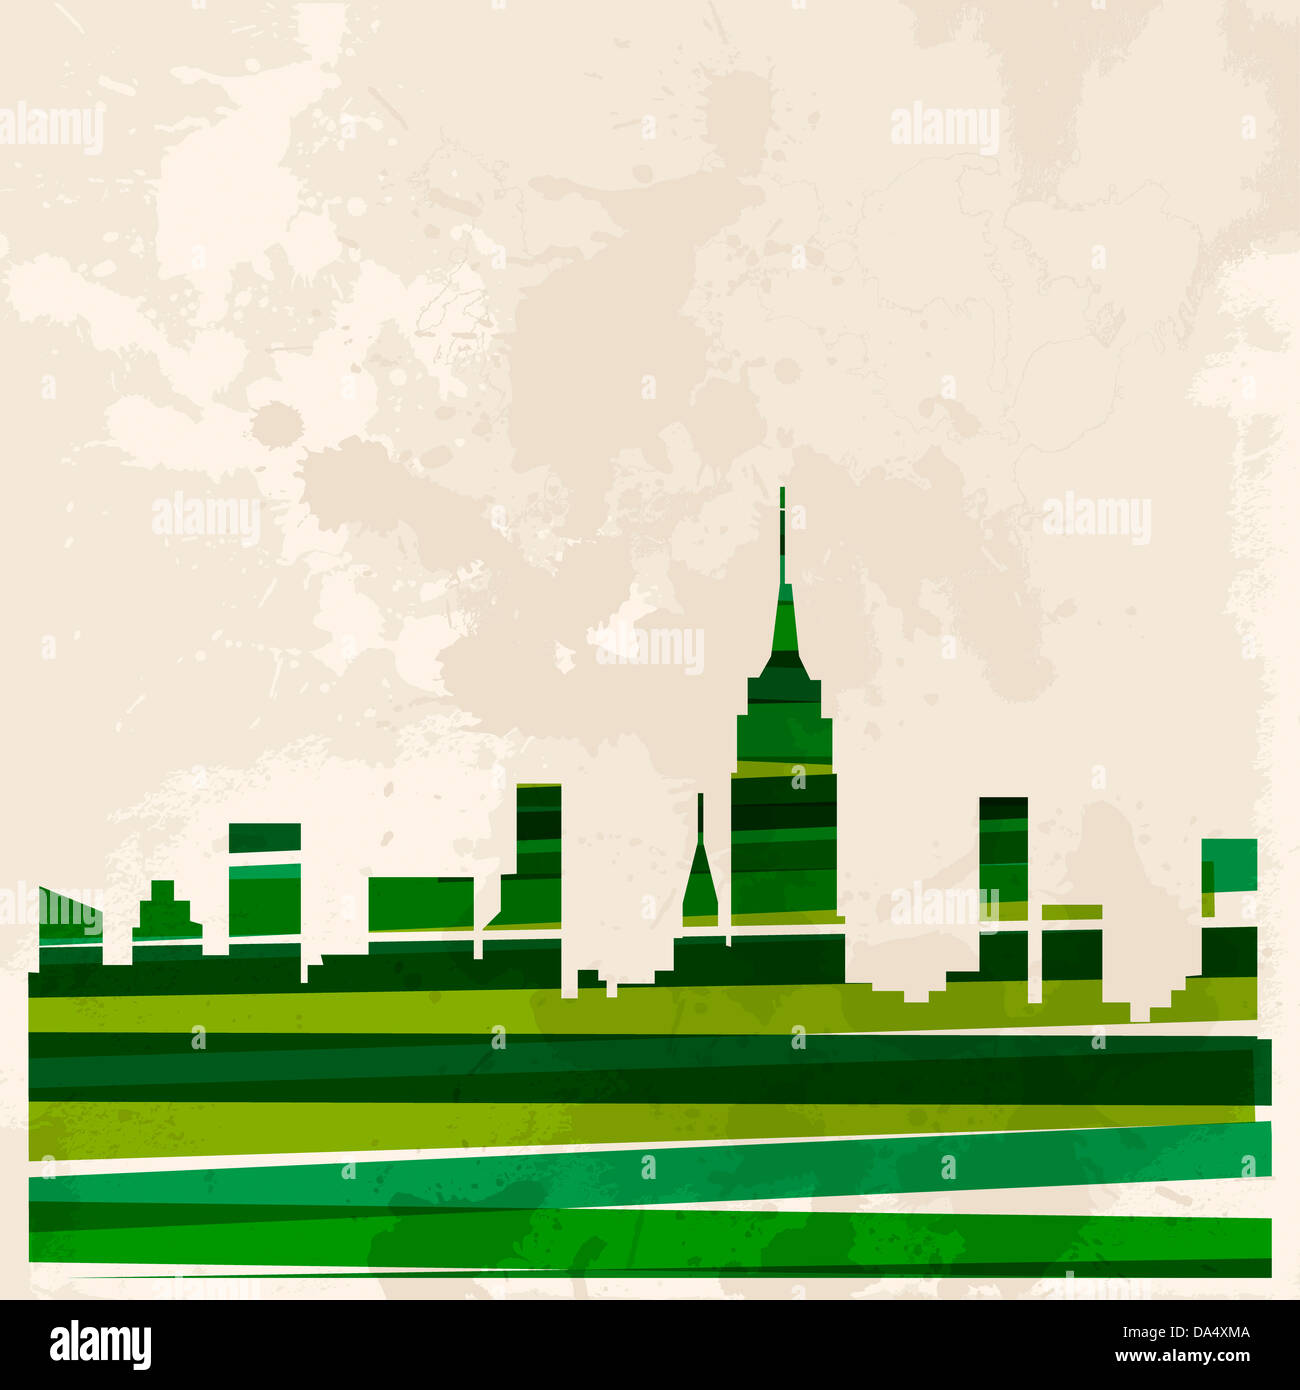 Vielfalt Farben transparente Bänder grün Konzept Stadt über Grunge Hintergrund. EPS10 Dateiversion. Diese Darstellung enthält Transparenz und ist für einfache Handhabung und individuelle Färbung geschichtet. Stockfoto